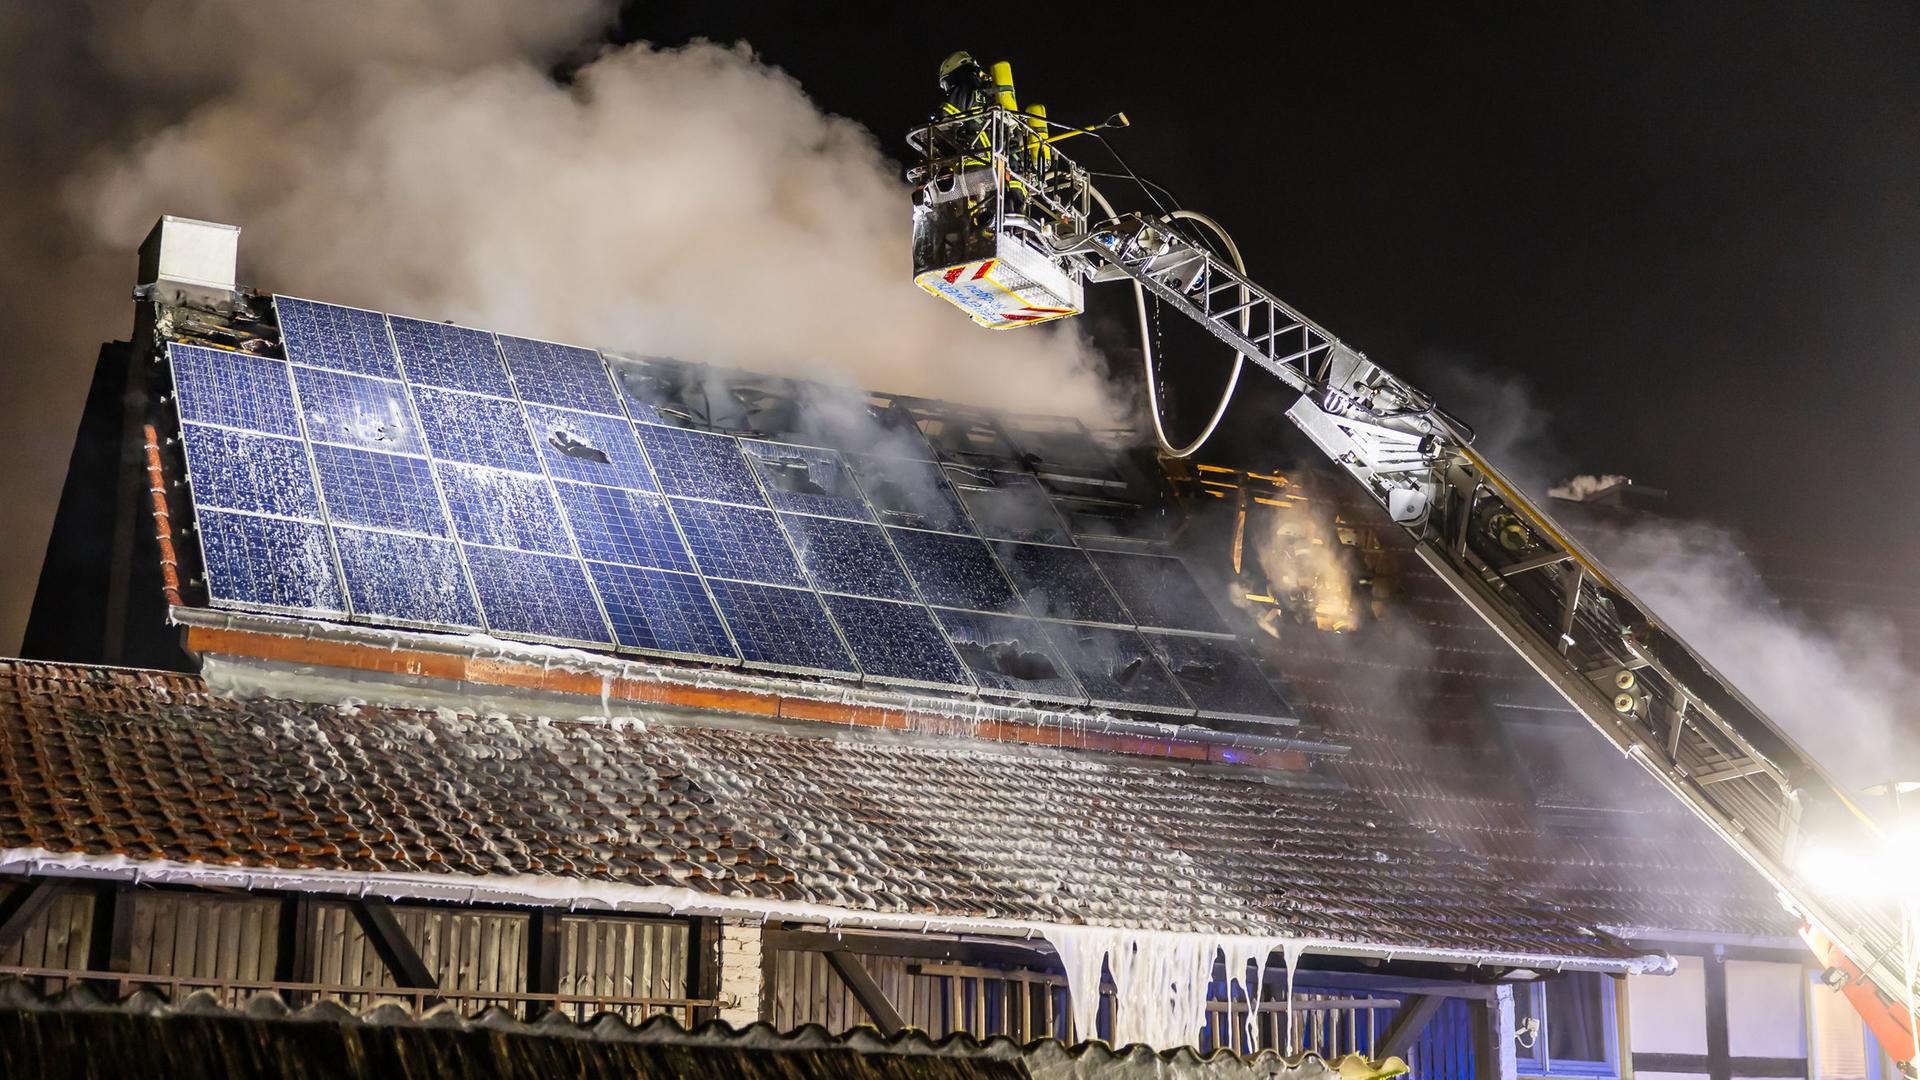 Balkonkraftwerk-Speicher in Riedstadt explodiert, Solaranlage bei